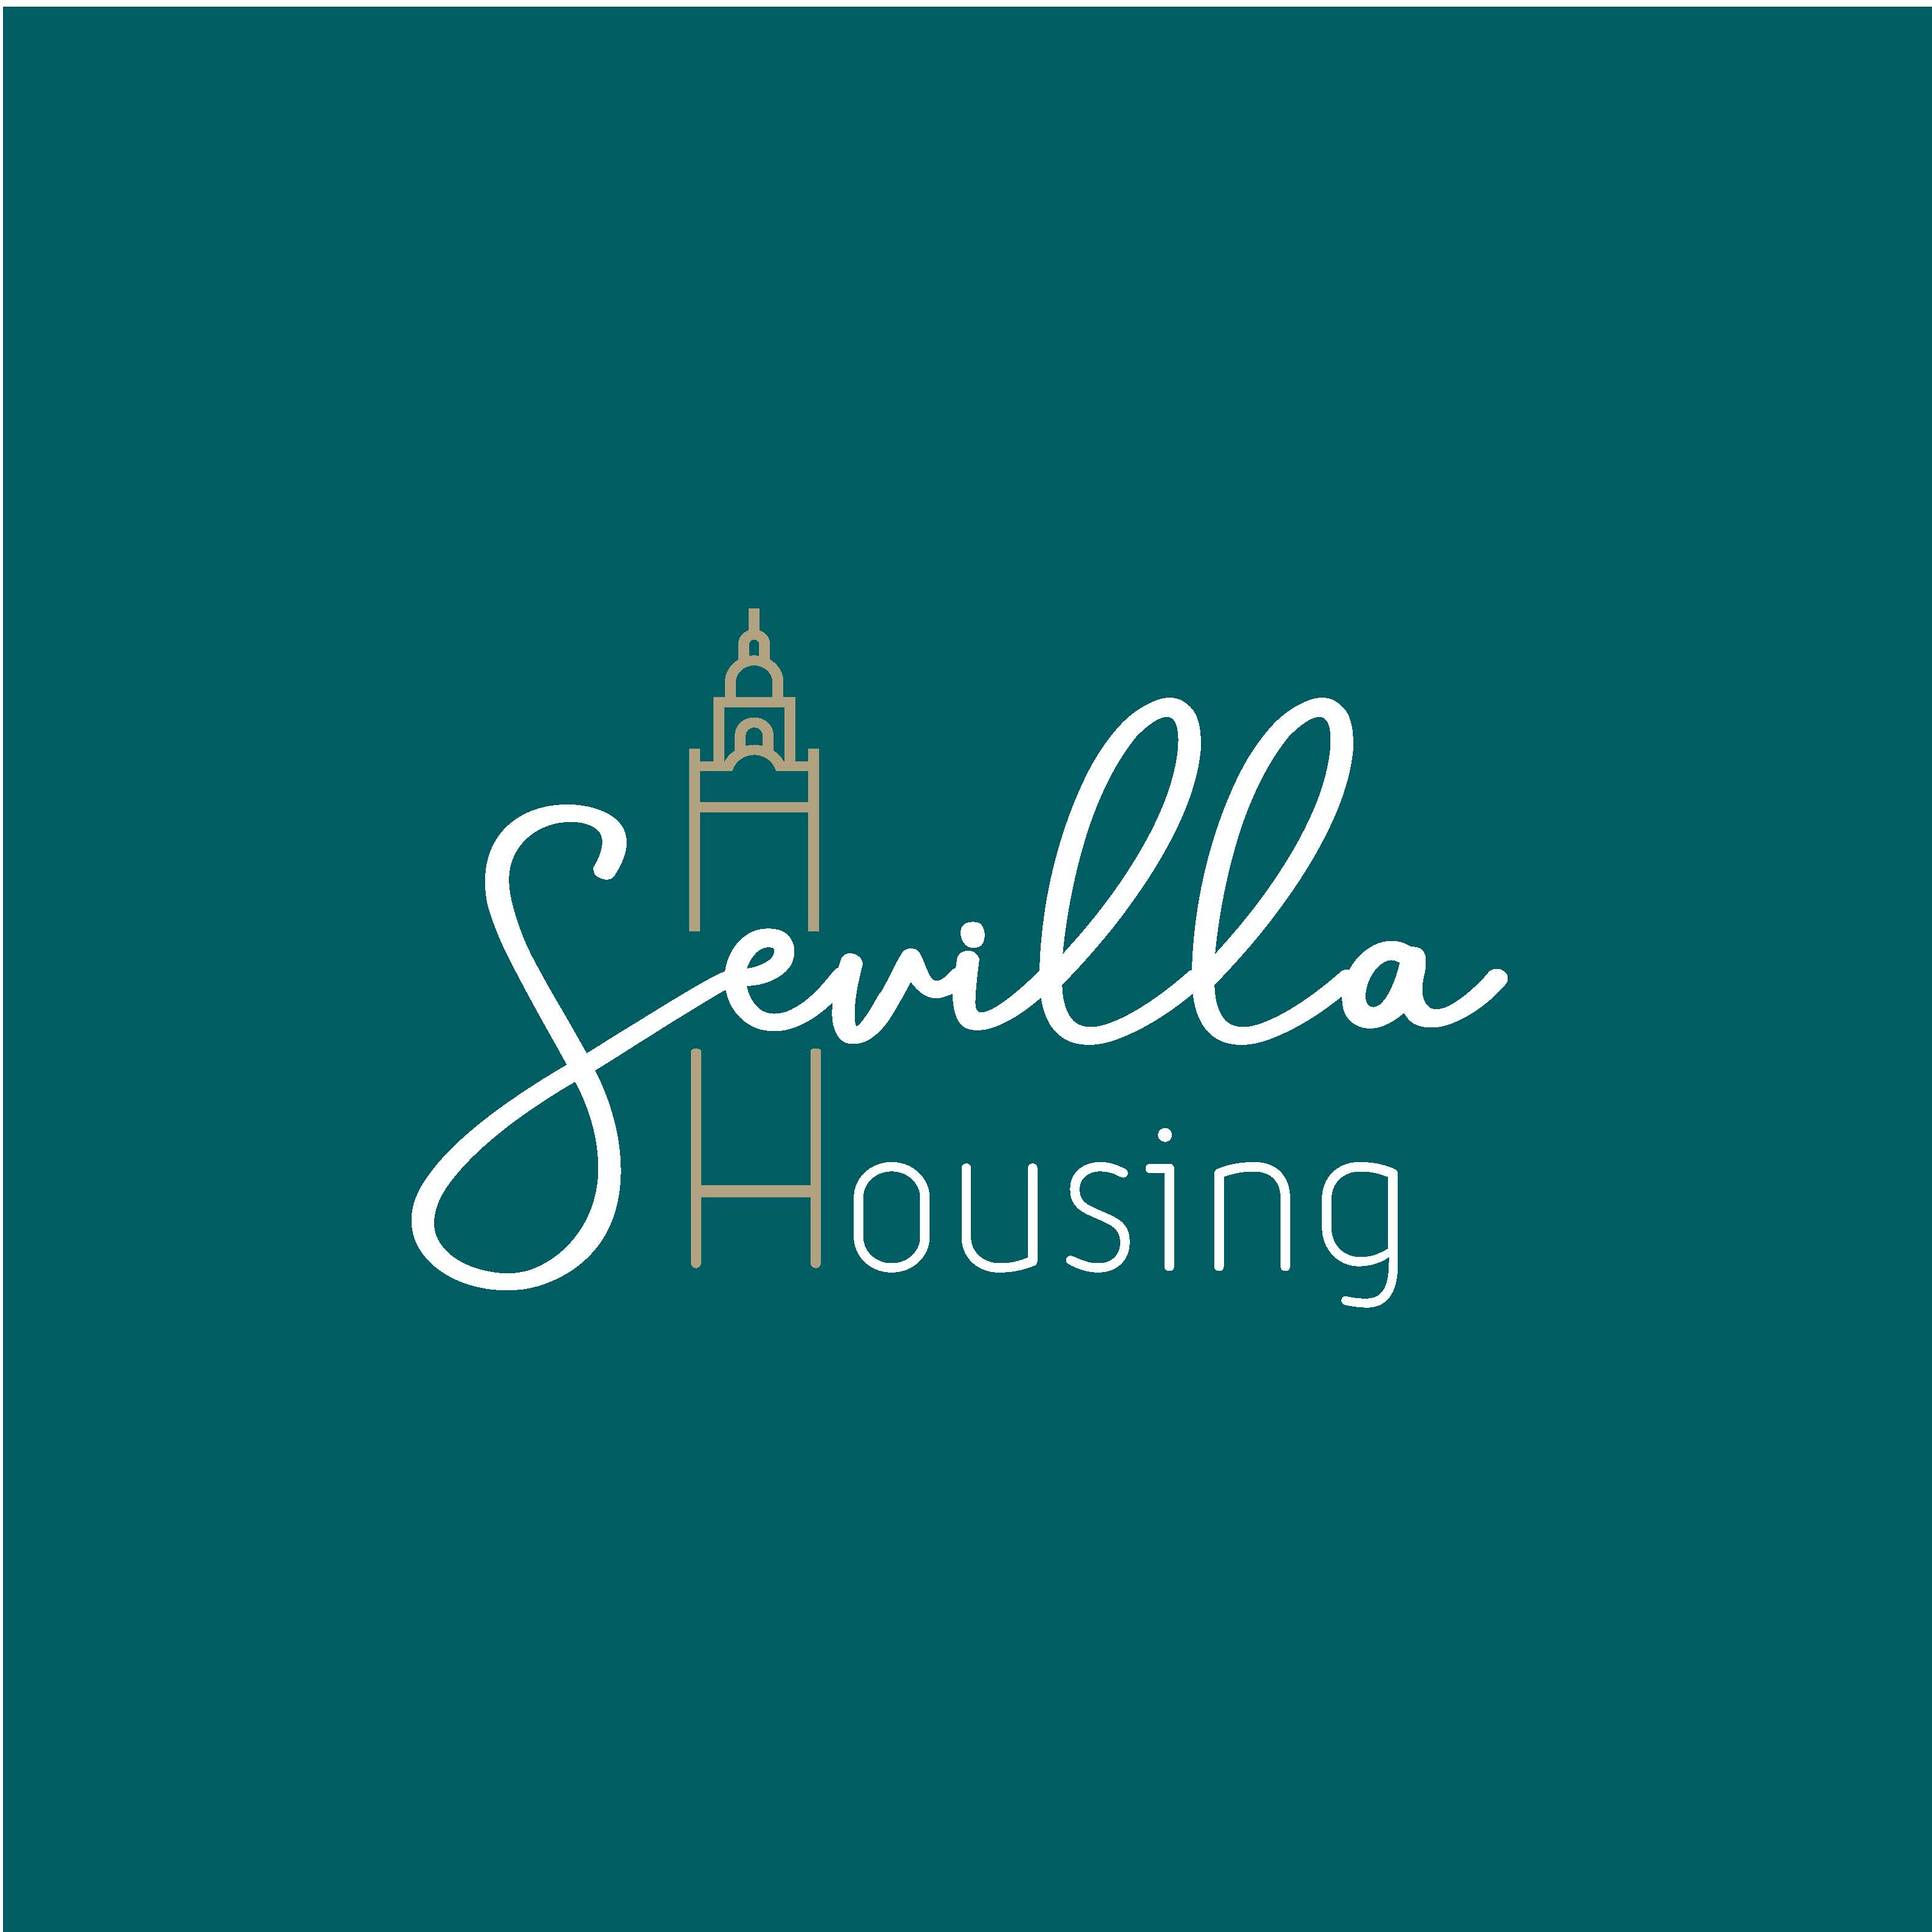 Sevilla Housing Sevilla